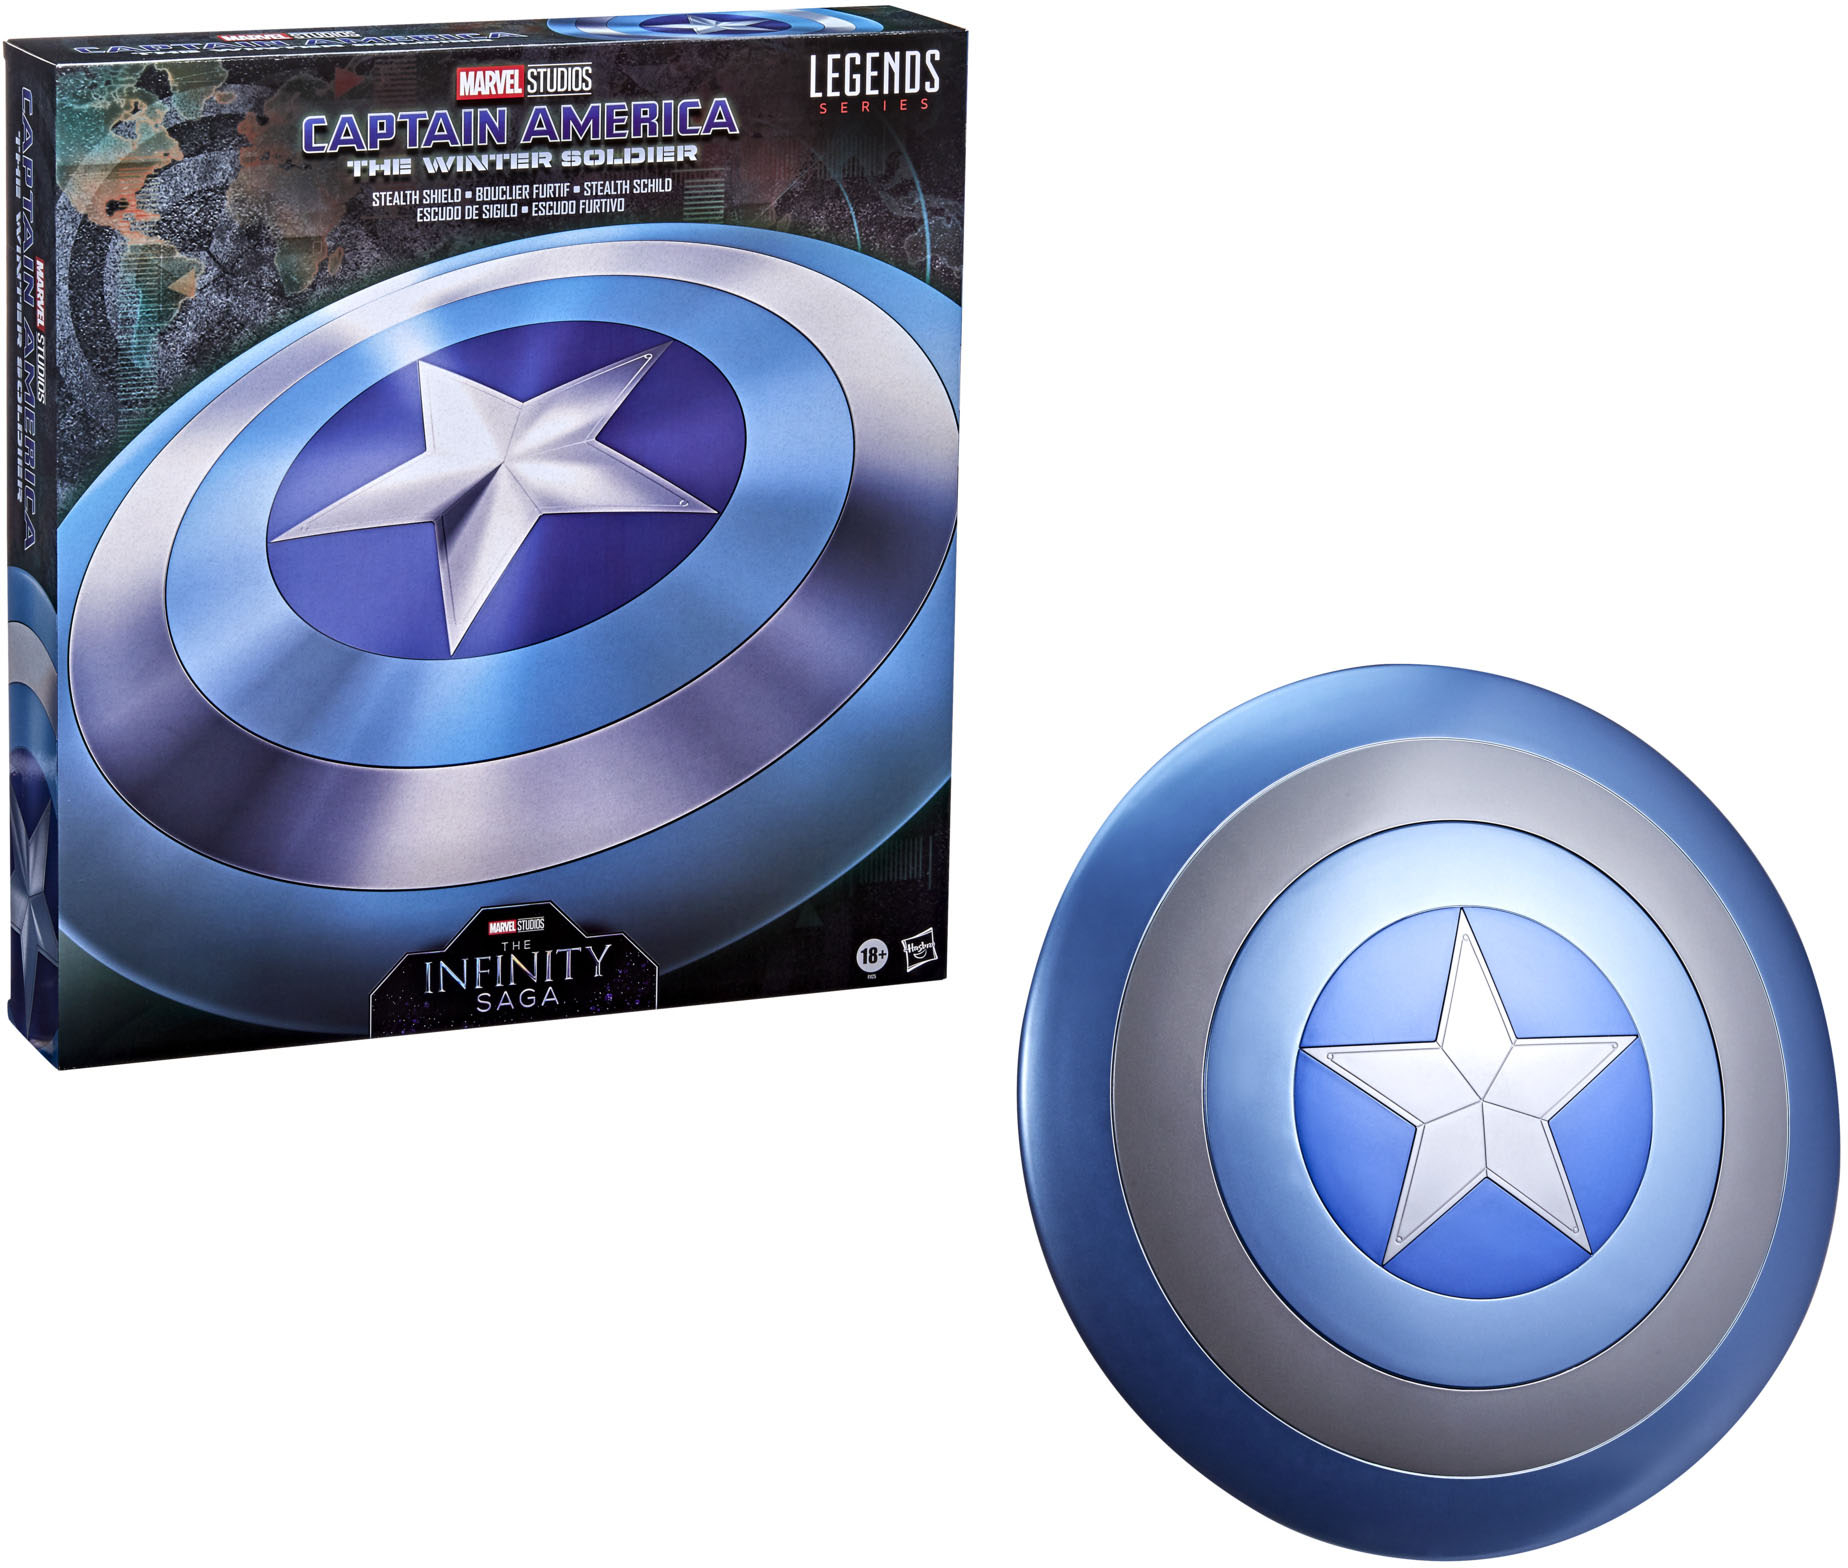 Enriquecimiento semáforo Fe ciega Marvel Legends Captain America Stealth Shield F1125 - Best Buy